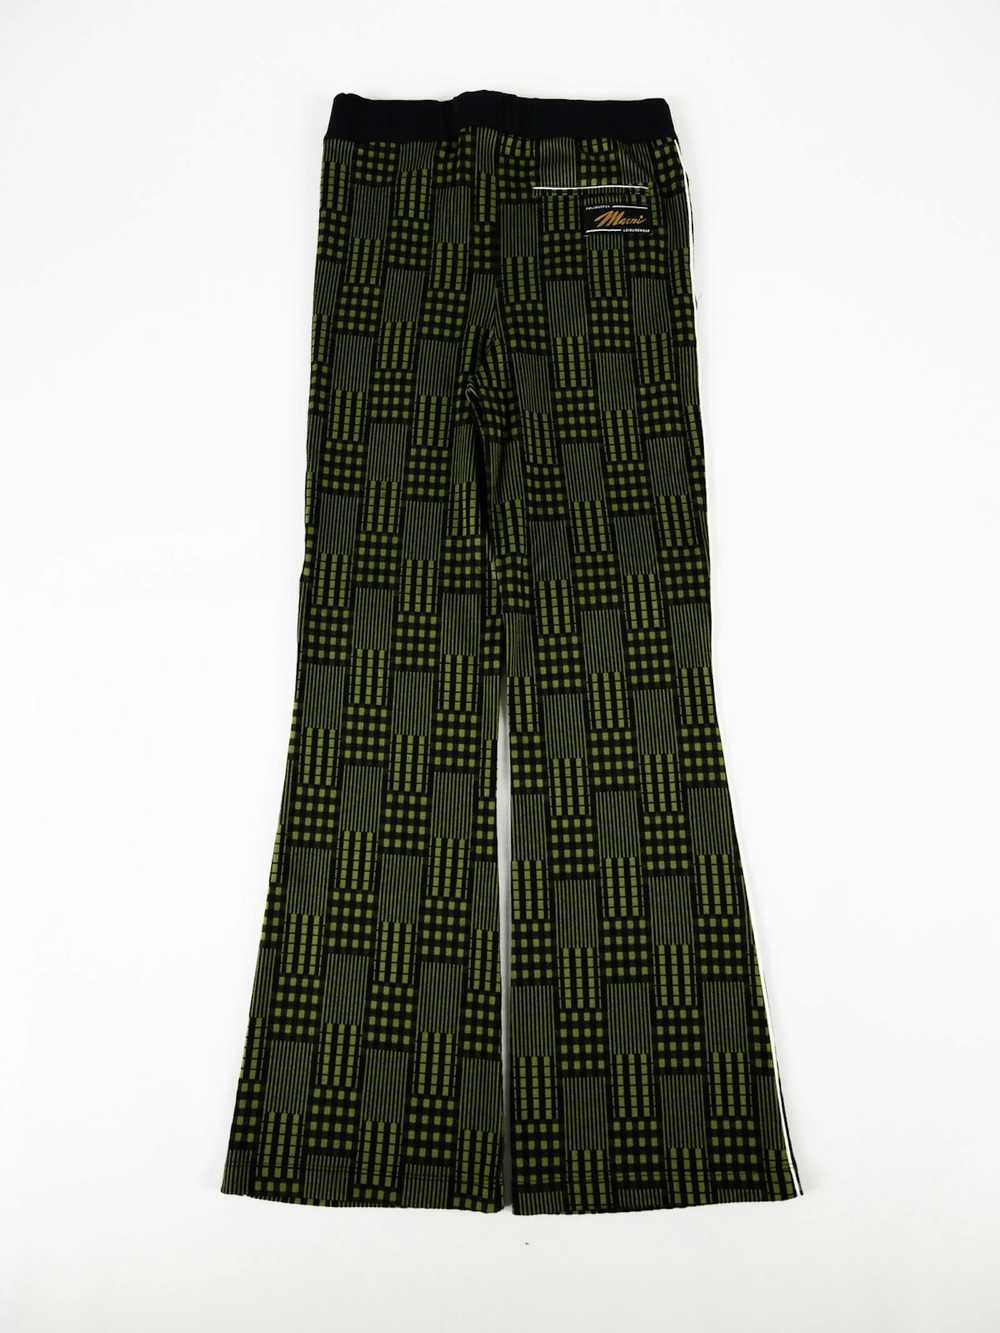 Marni Marni Striped Jersey Trousers - image 2